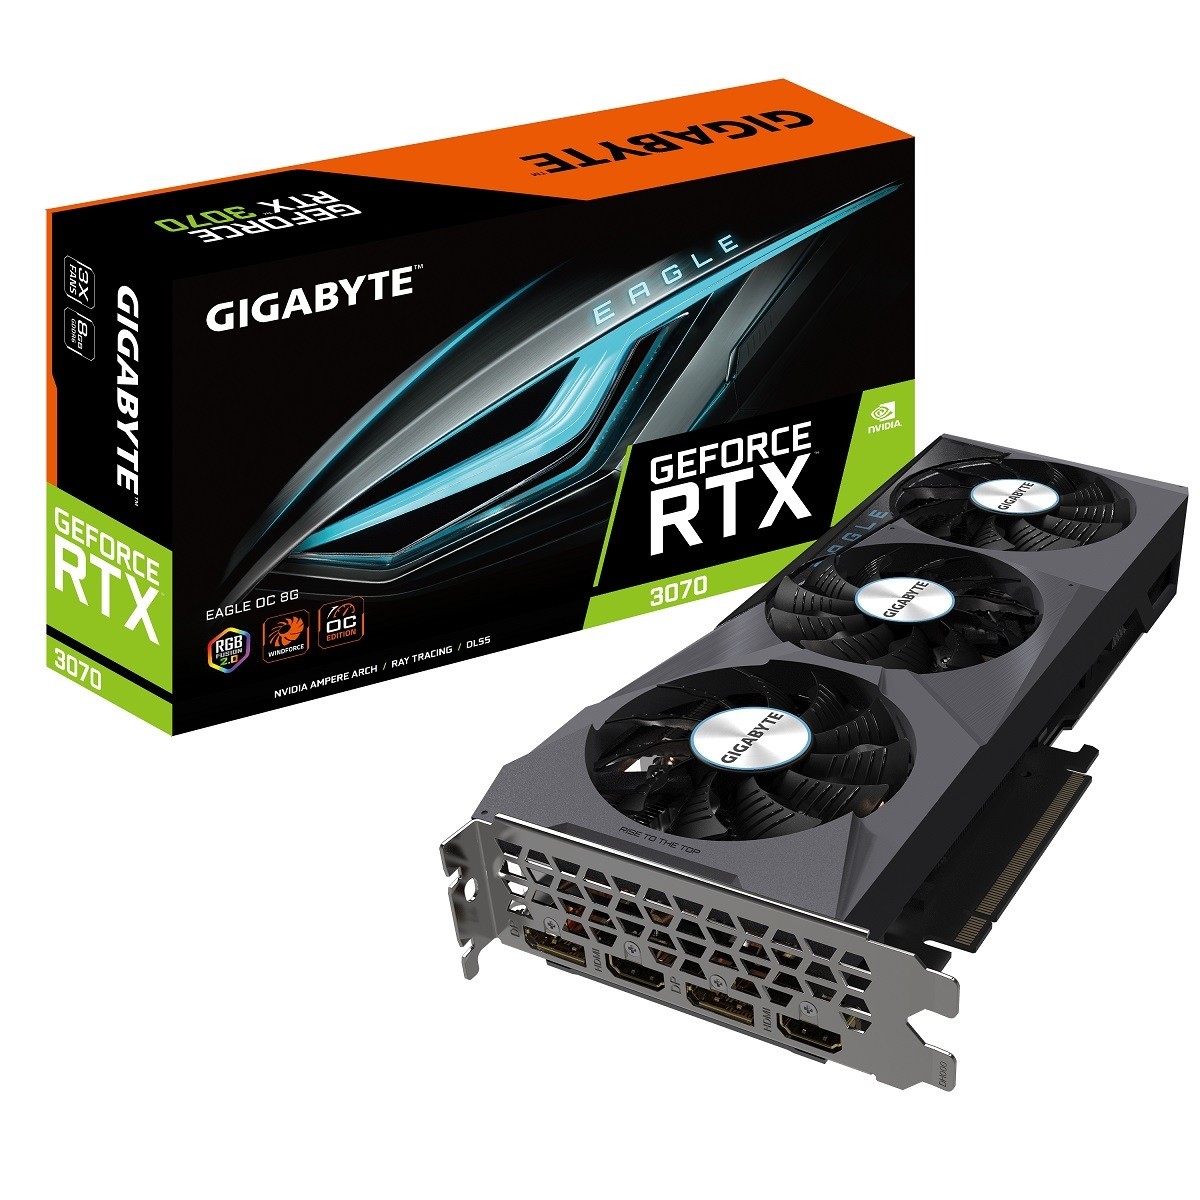 技嘉推出多款 GeForce RTX 3070 系列顯示卡 針對各種族群的需求設計